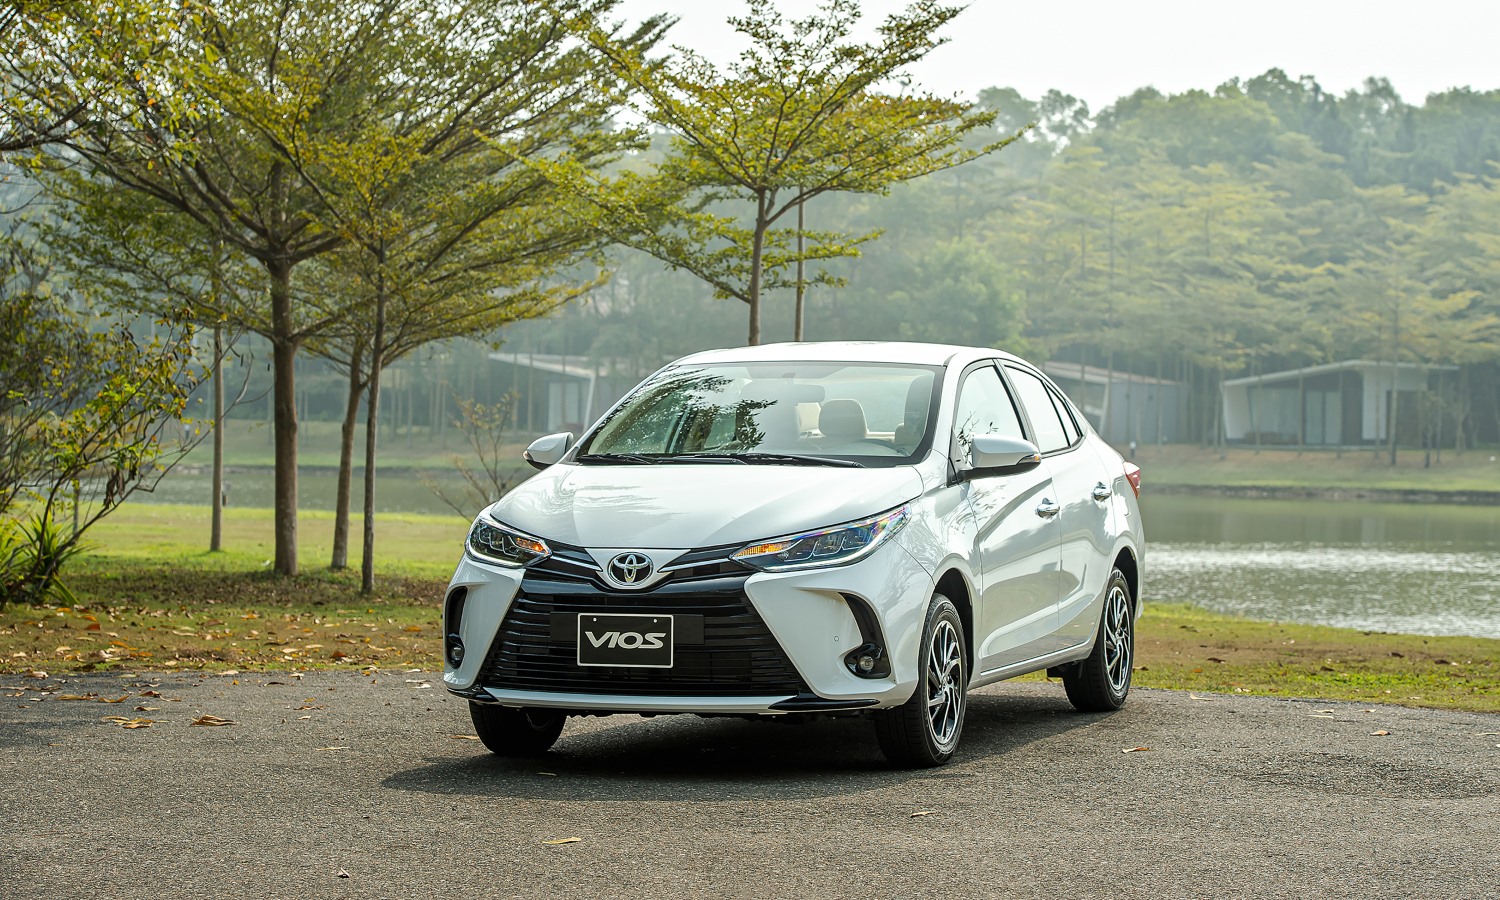 Toyota Vios được lắp ráp trong nước với tổng cộng 6 phiên bản, tăng 1 phiên bản đặc biệt (Vios GR-S) so với trước đây. Ảnh: Toyota Việt Nam